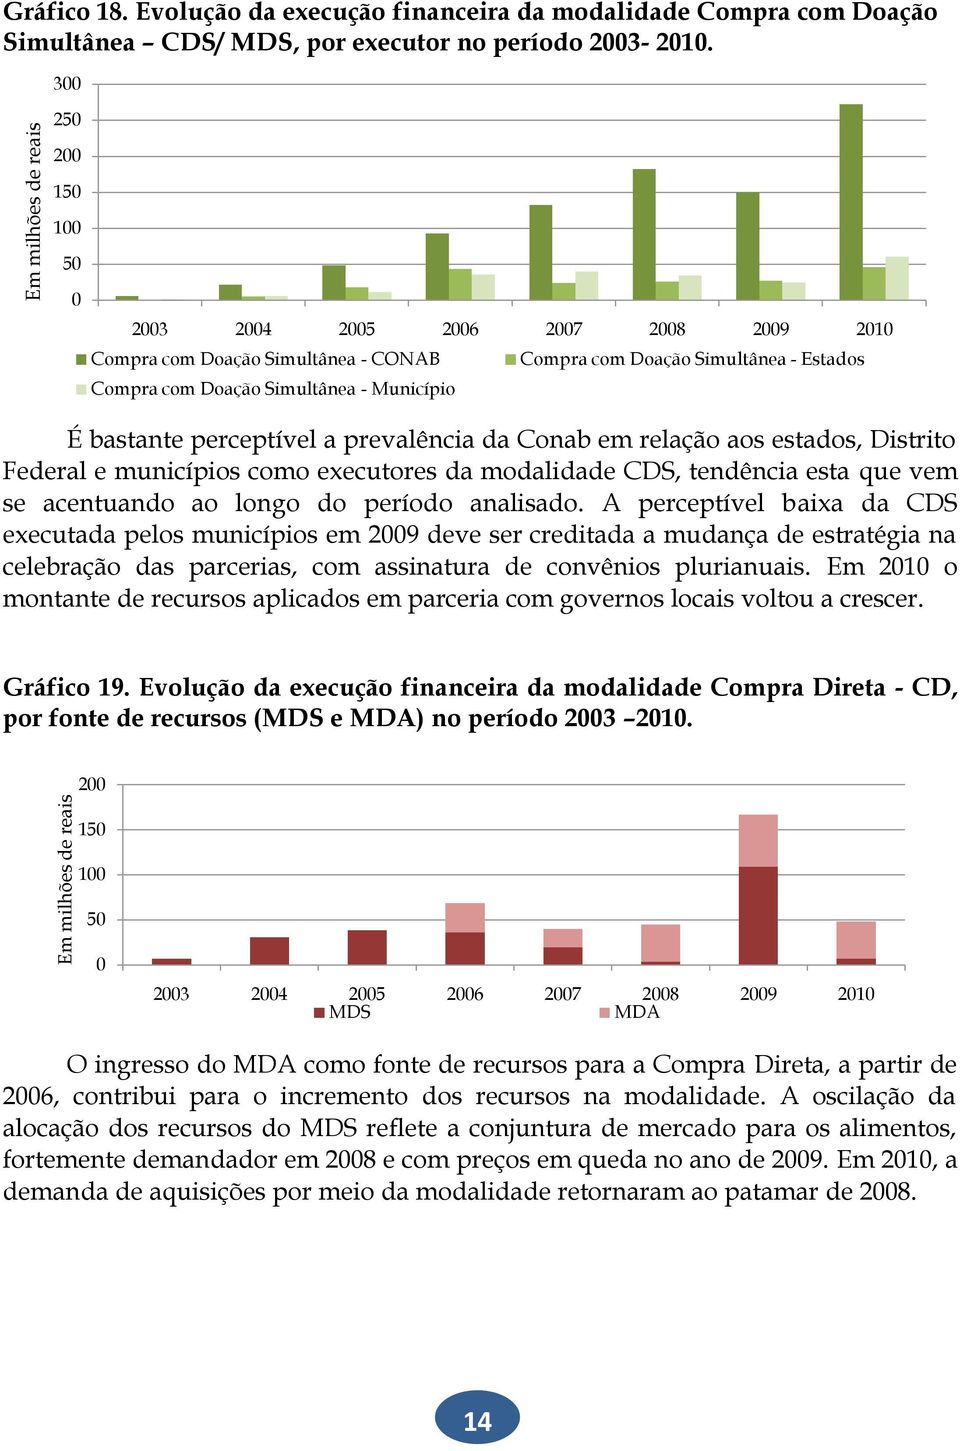 perceptível a prevalência da Conab em relação aos estados, Distrito Federal e municípios como executores da modalidade CDS, tendência esta que vem se acentuando ao longo do período analisado.